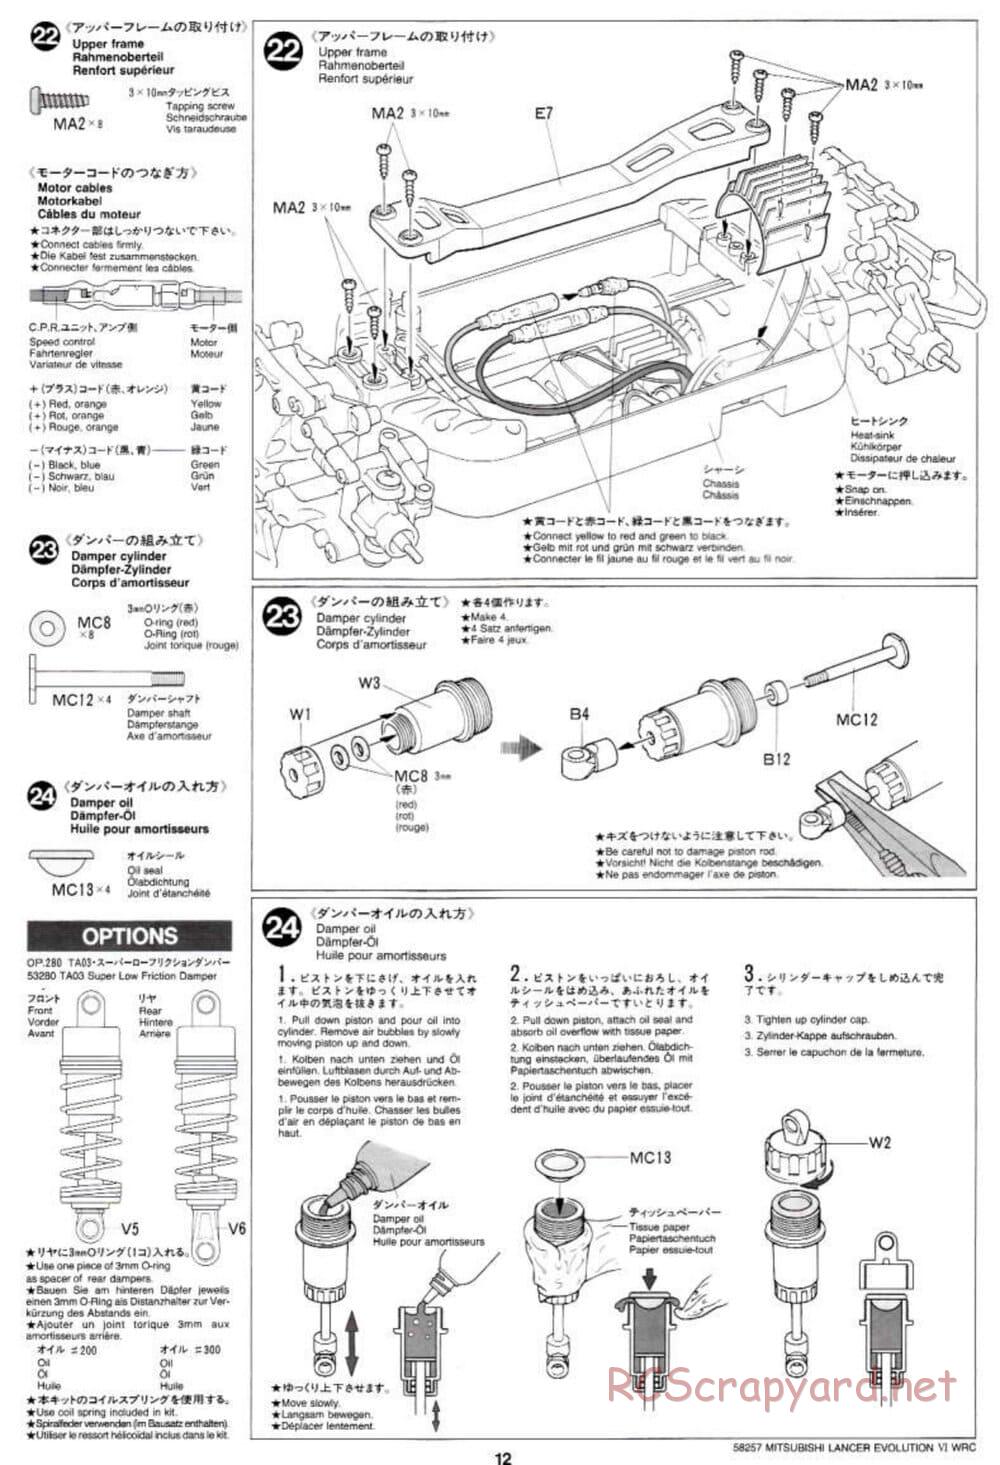 Tamiya - Mitsubishi Lancer Evolution VI WRC - TB-01 Chassis - Manual - Page 12